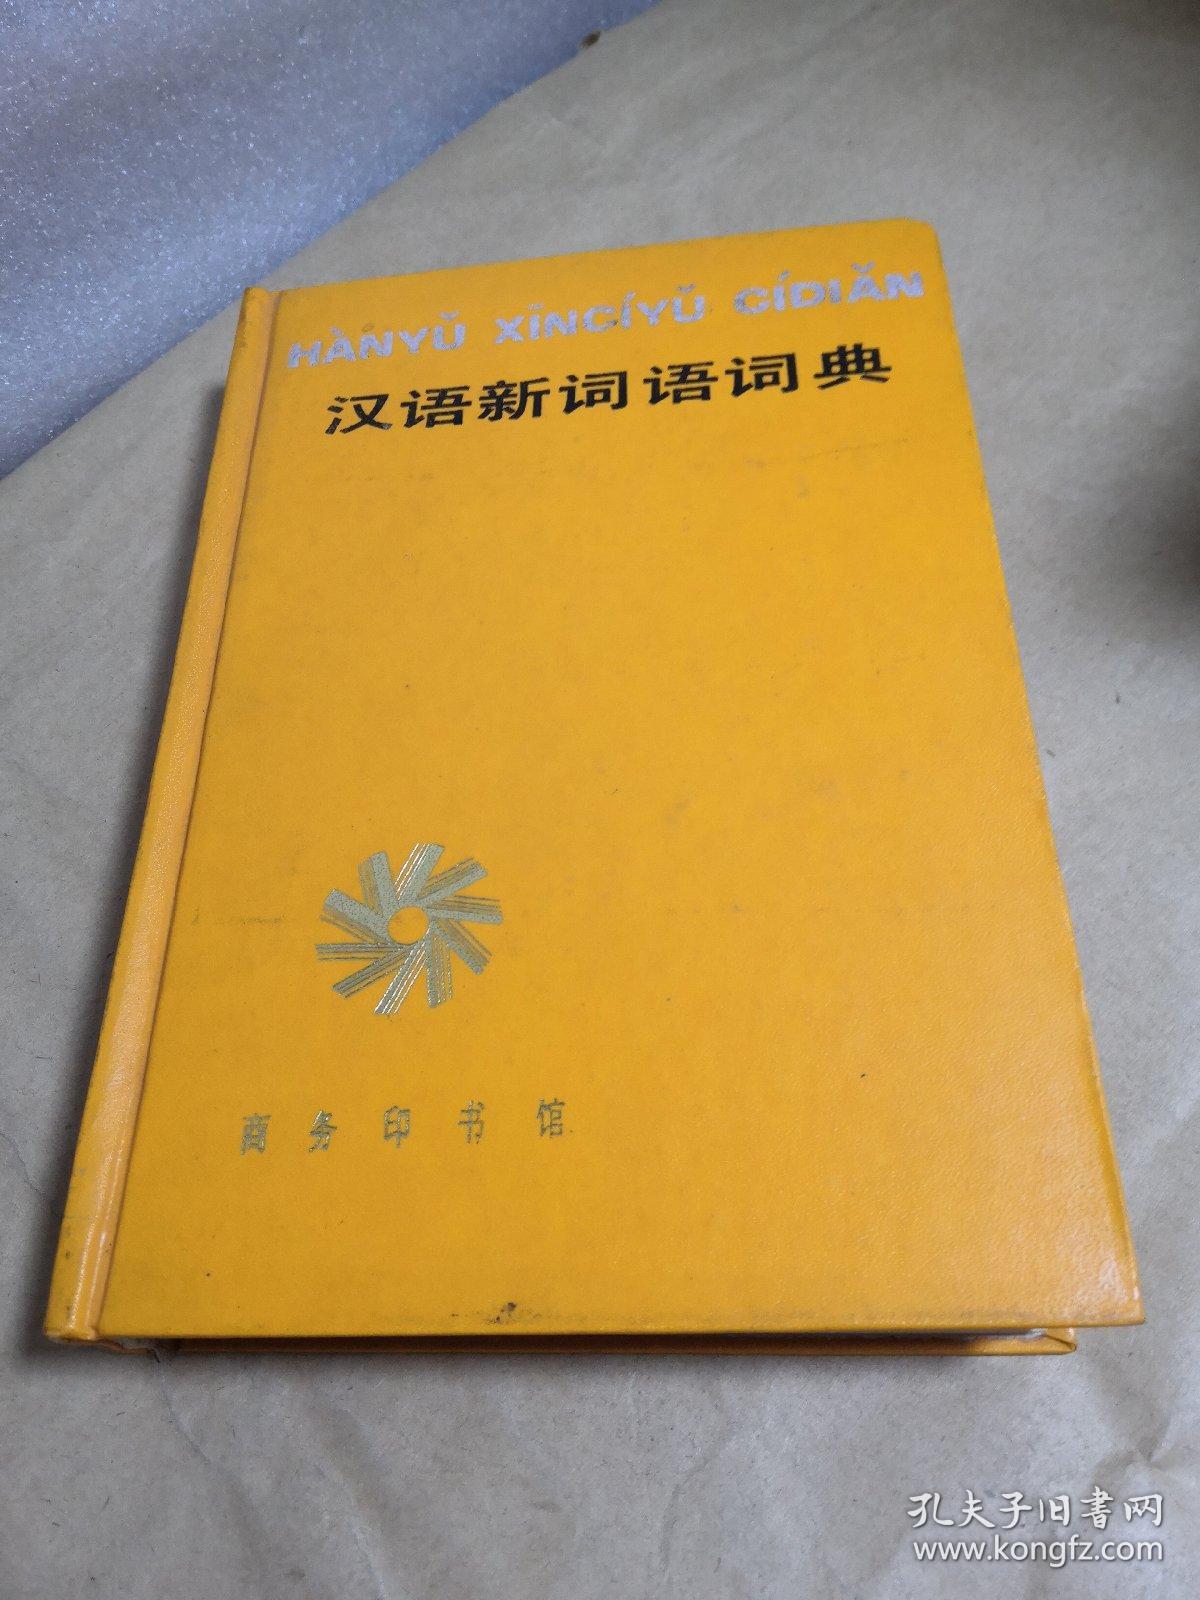 汉语新词语词典